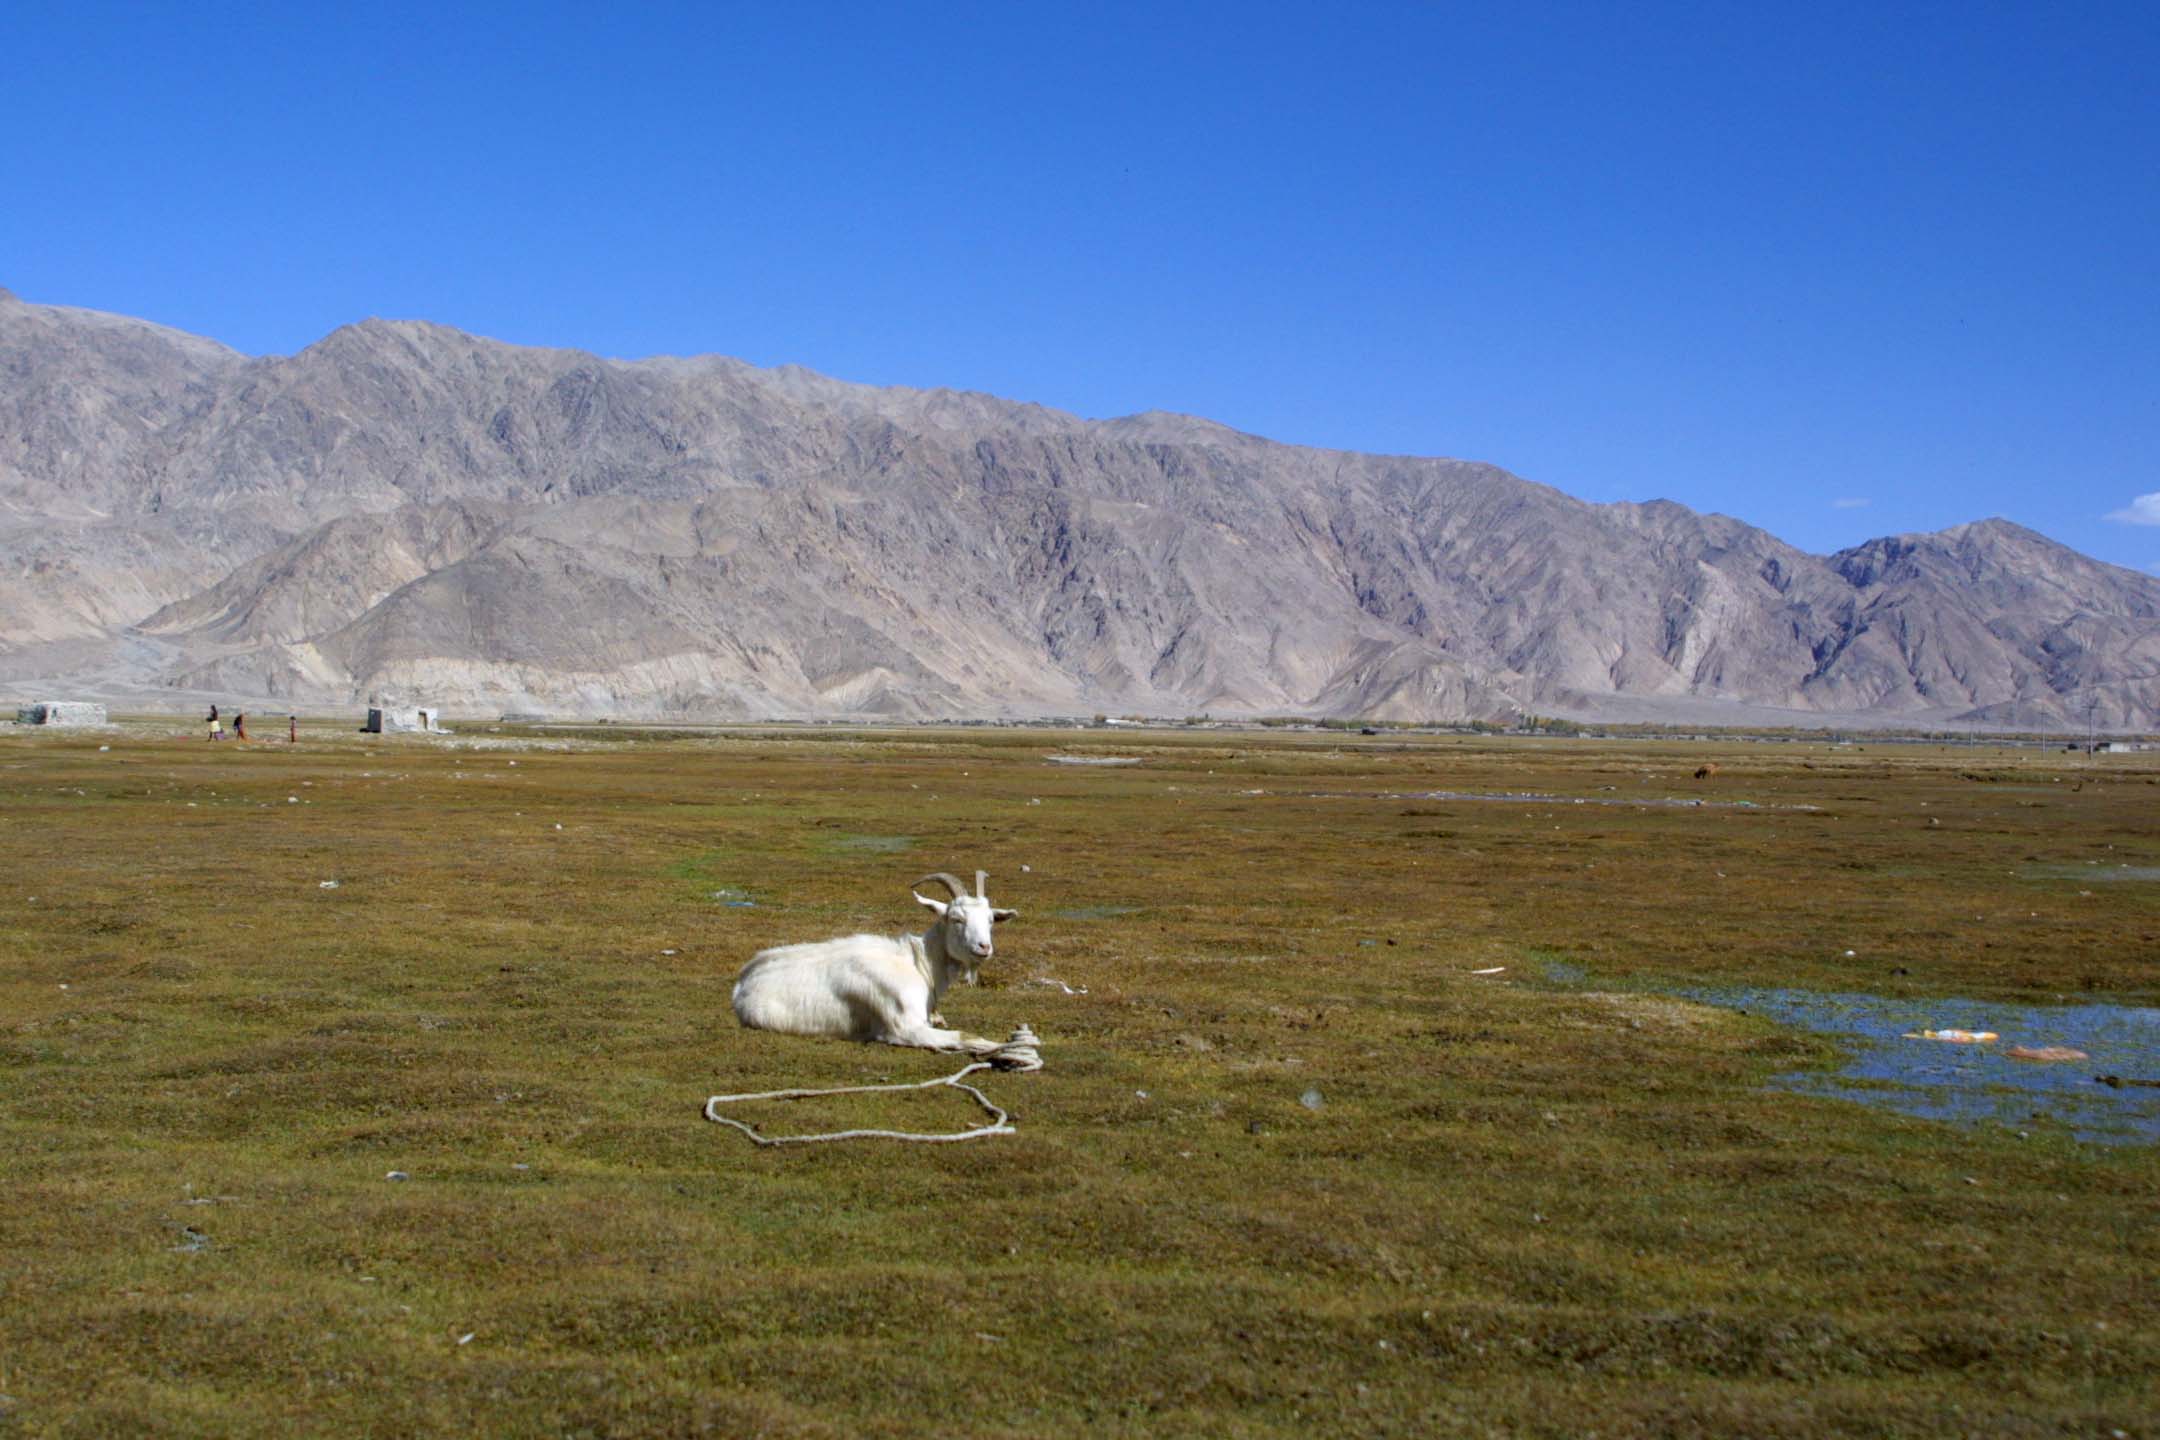 Pamir Plateau at Tashkurgan